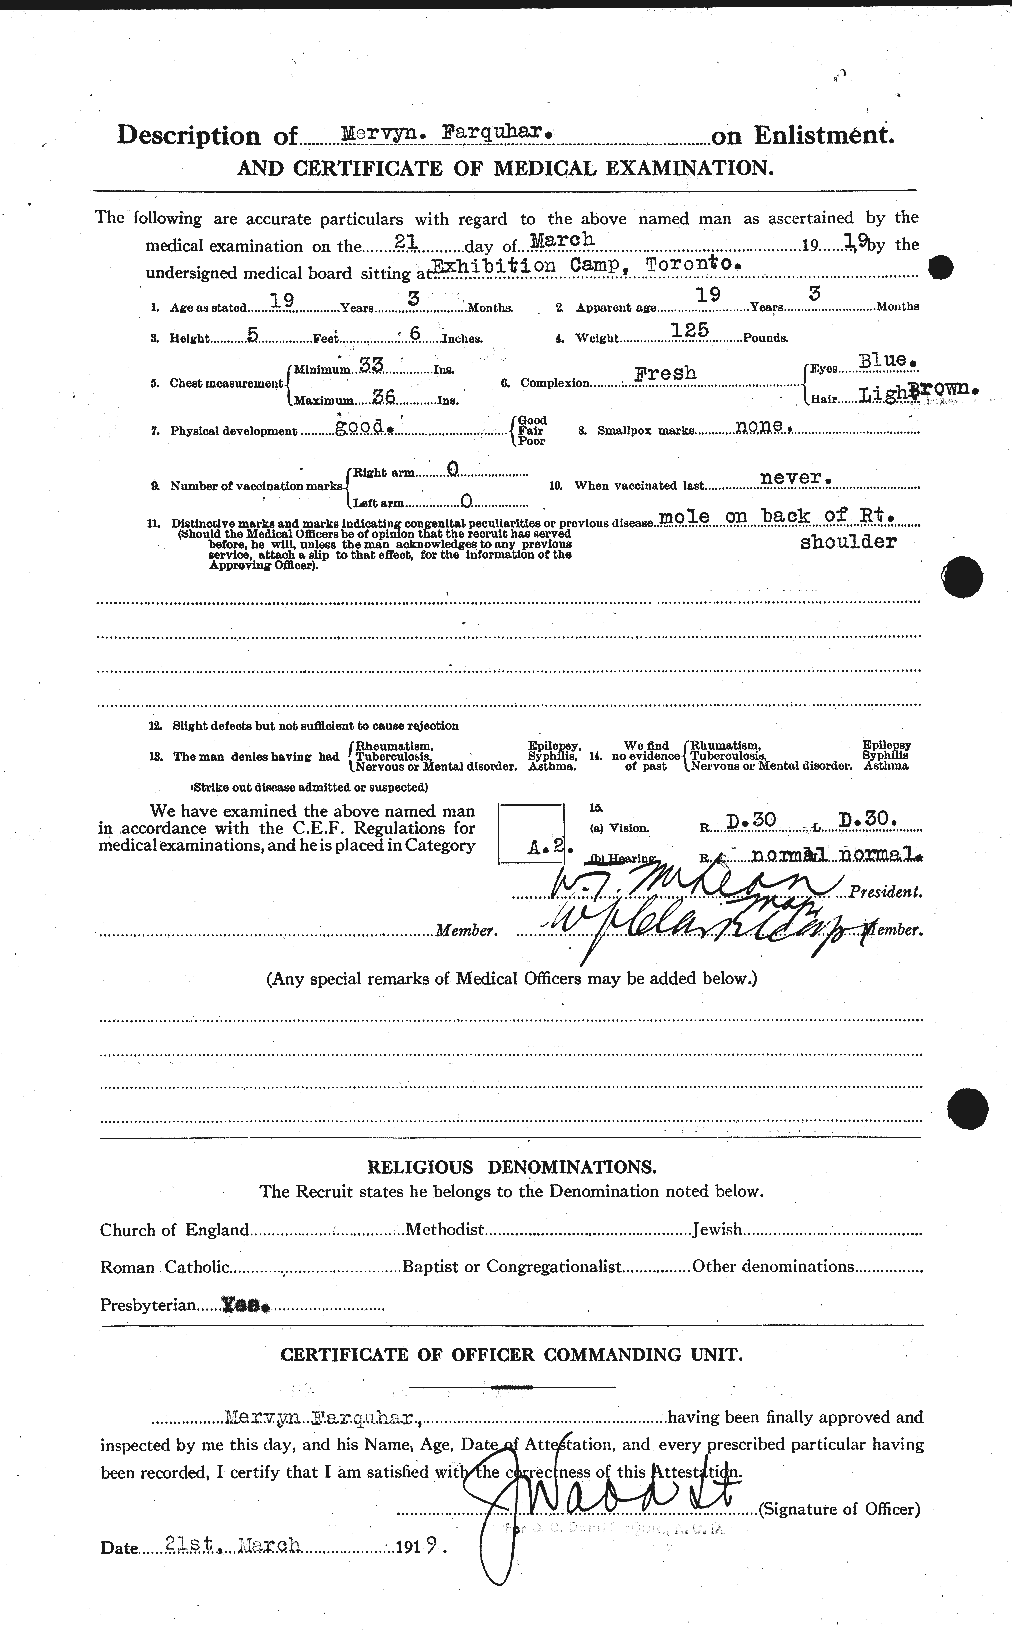 Dossiers du Personnel de la Première Guerre mondiale - CEC 318790b